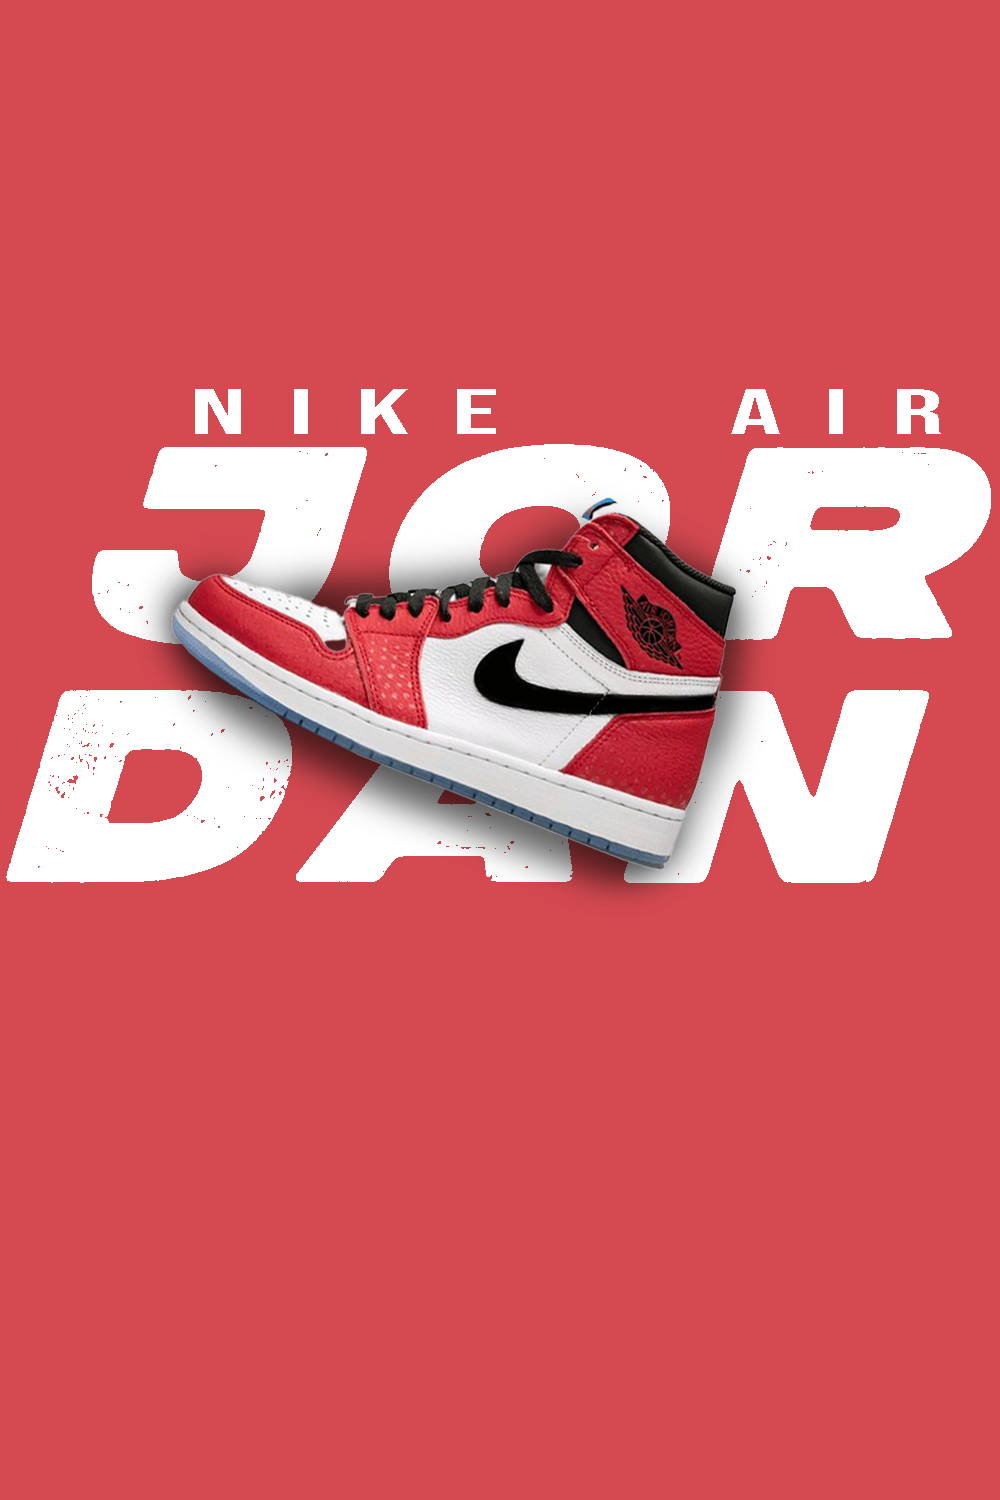 Nike Air Jordan 1 poster pinterest preview image.